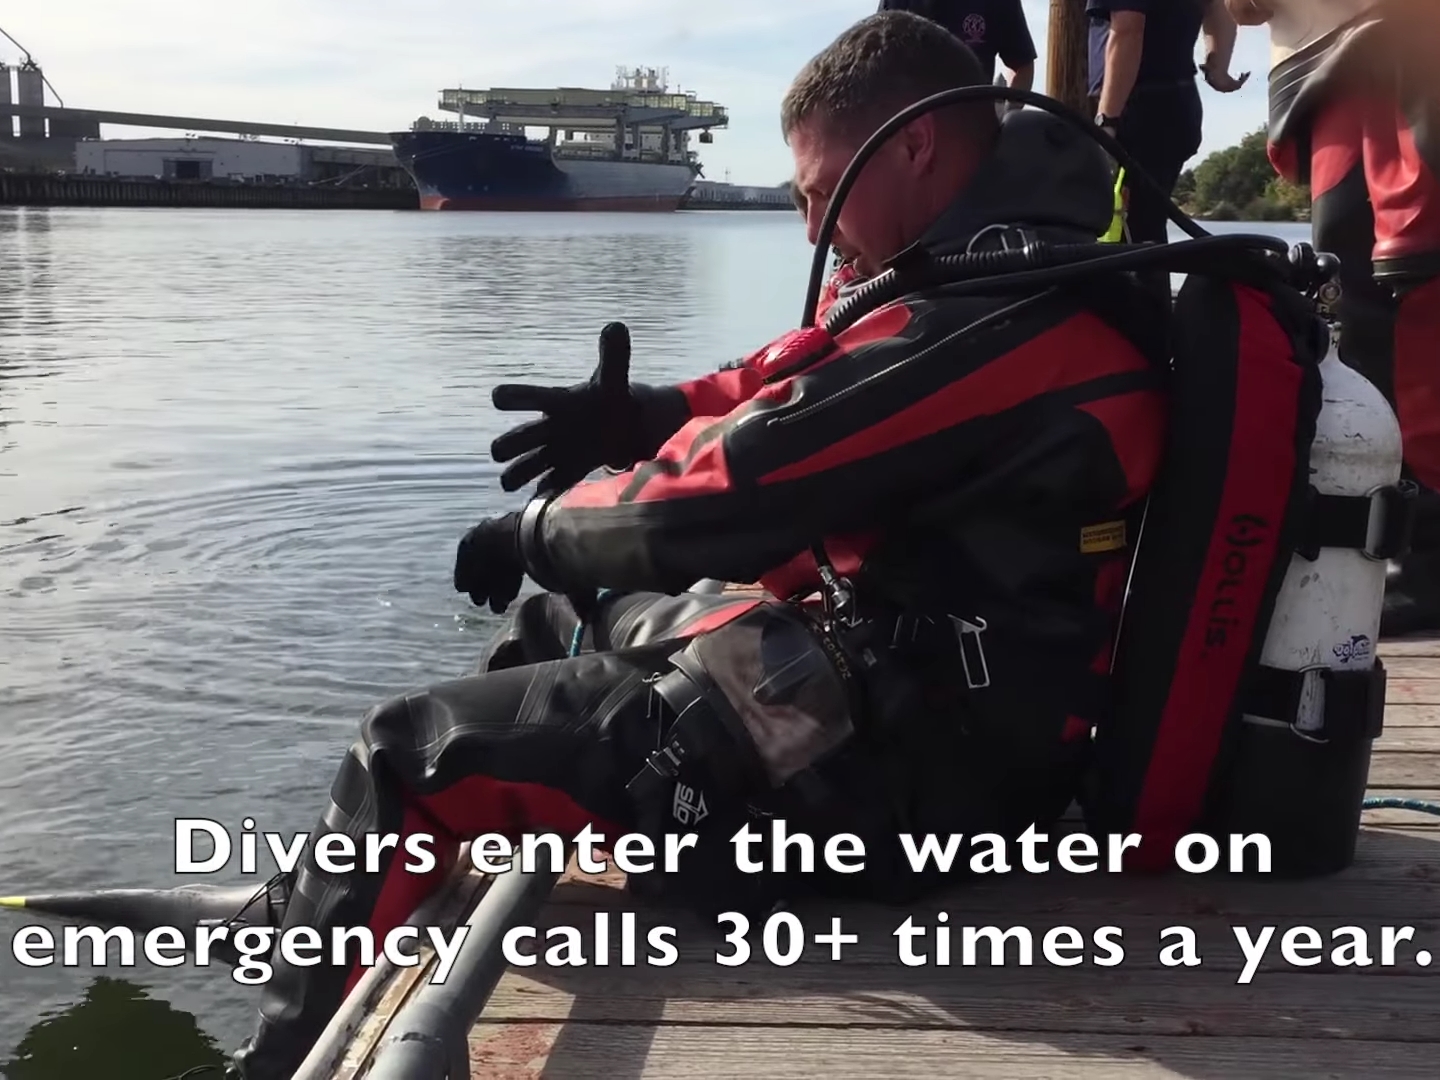 消防士の水難救助活動中の事故を防ぐサイズアップについて